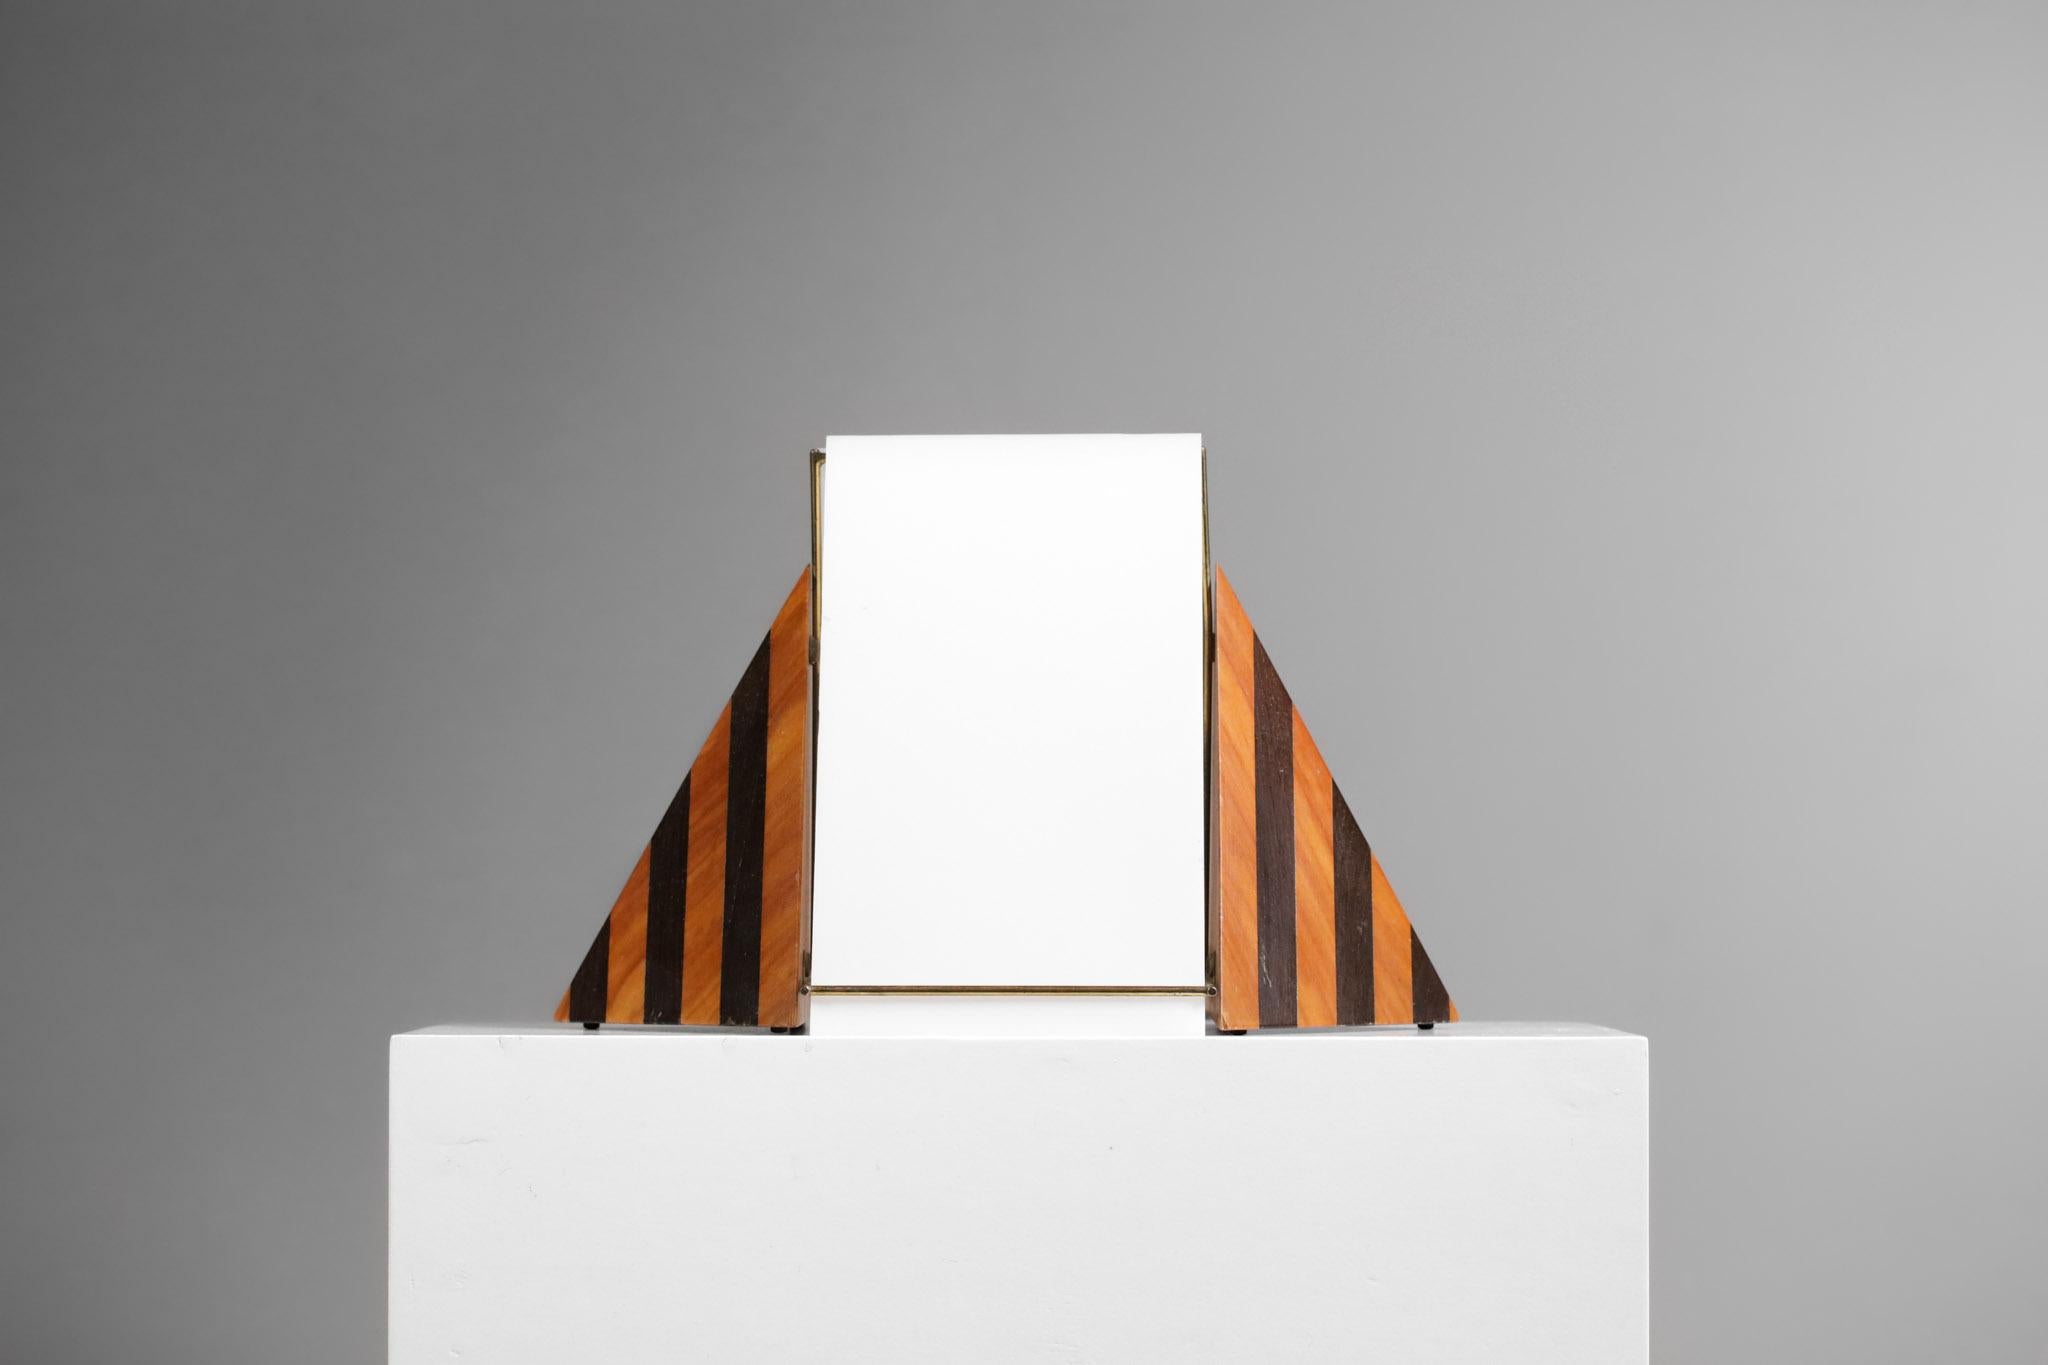 Lampe de bureau ou de table italienne des années 80 dans le goût du travail de Tobia & Arfa Scarpa. Structure de la lampe en bois plaqué, tiges en laiton massif et abat-jour formé de deux plaques de plexiglas blanc. Forme pyramidale très originale